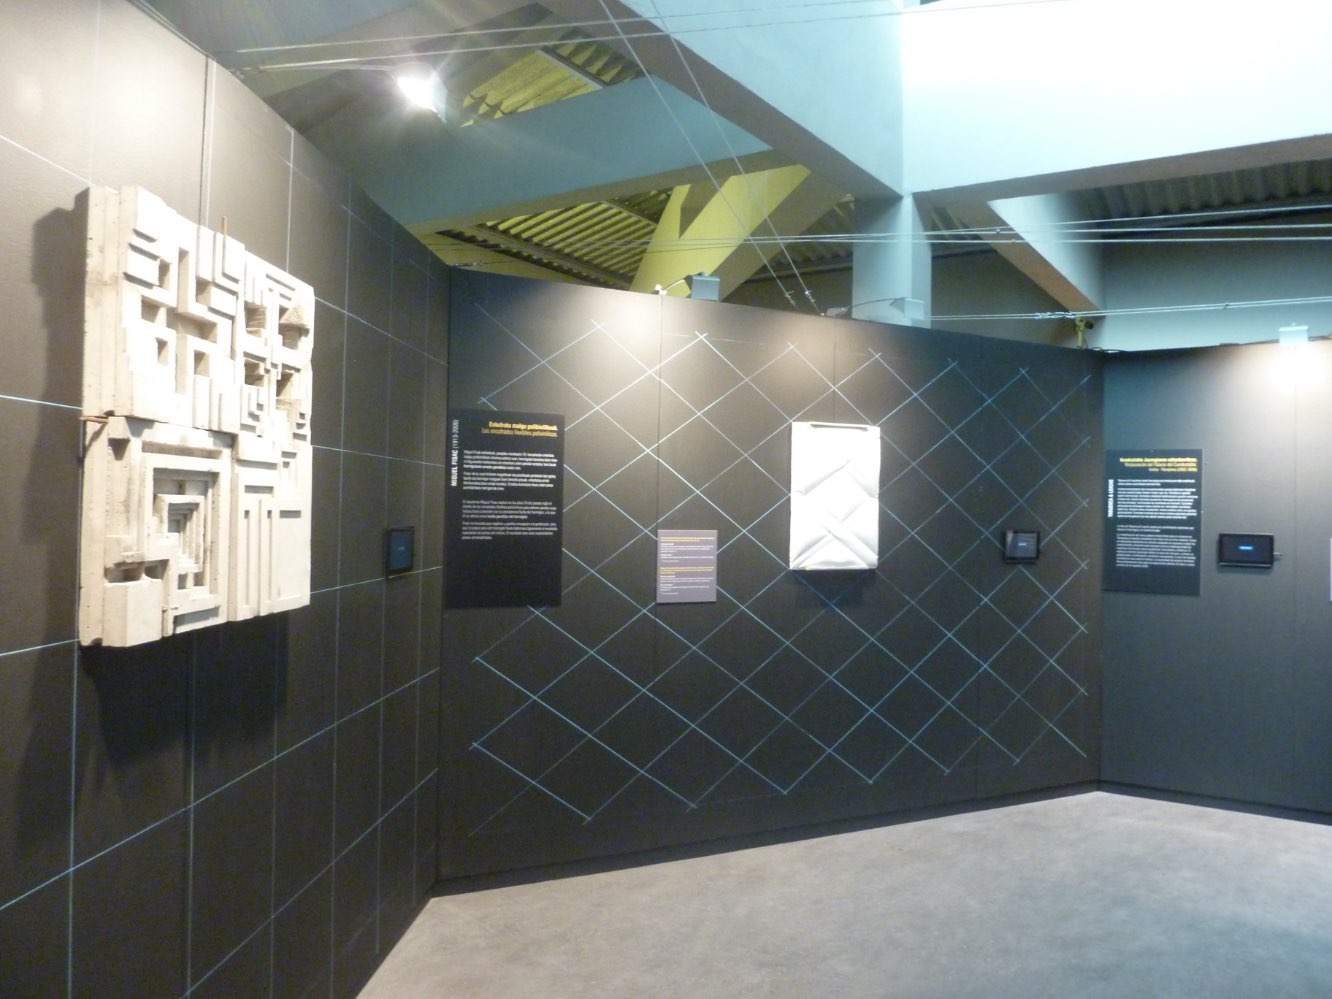 Vista general de la exposición "el tacto del hormigón" con paneles expositivos